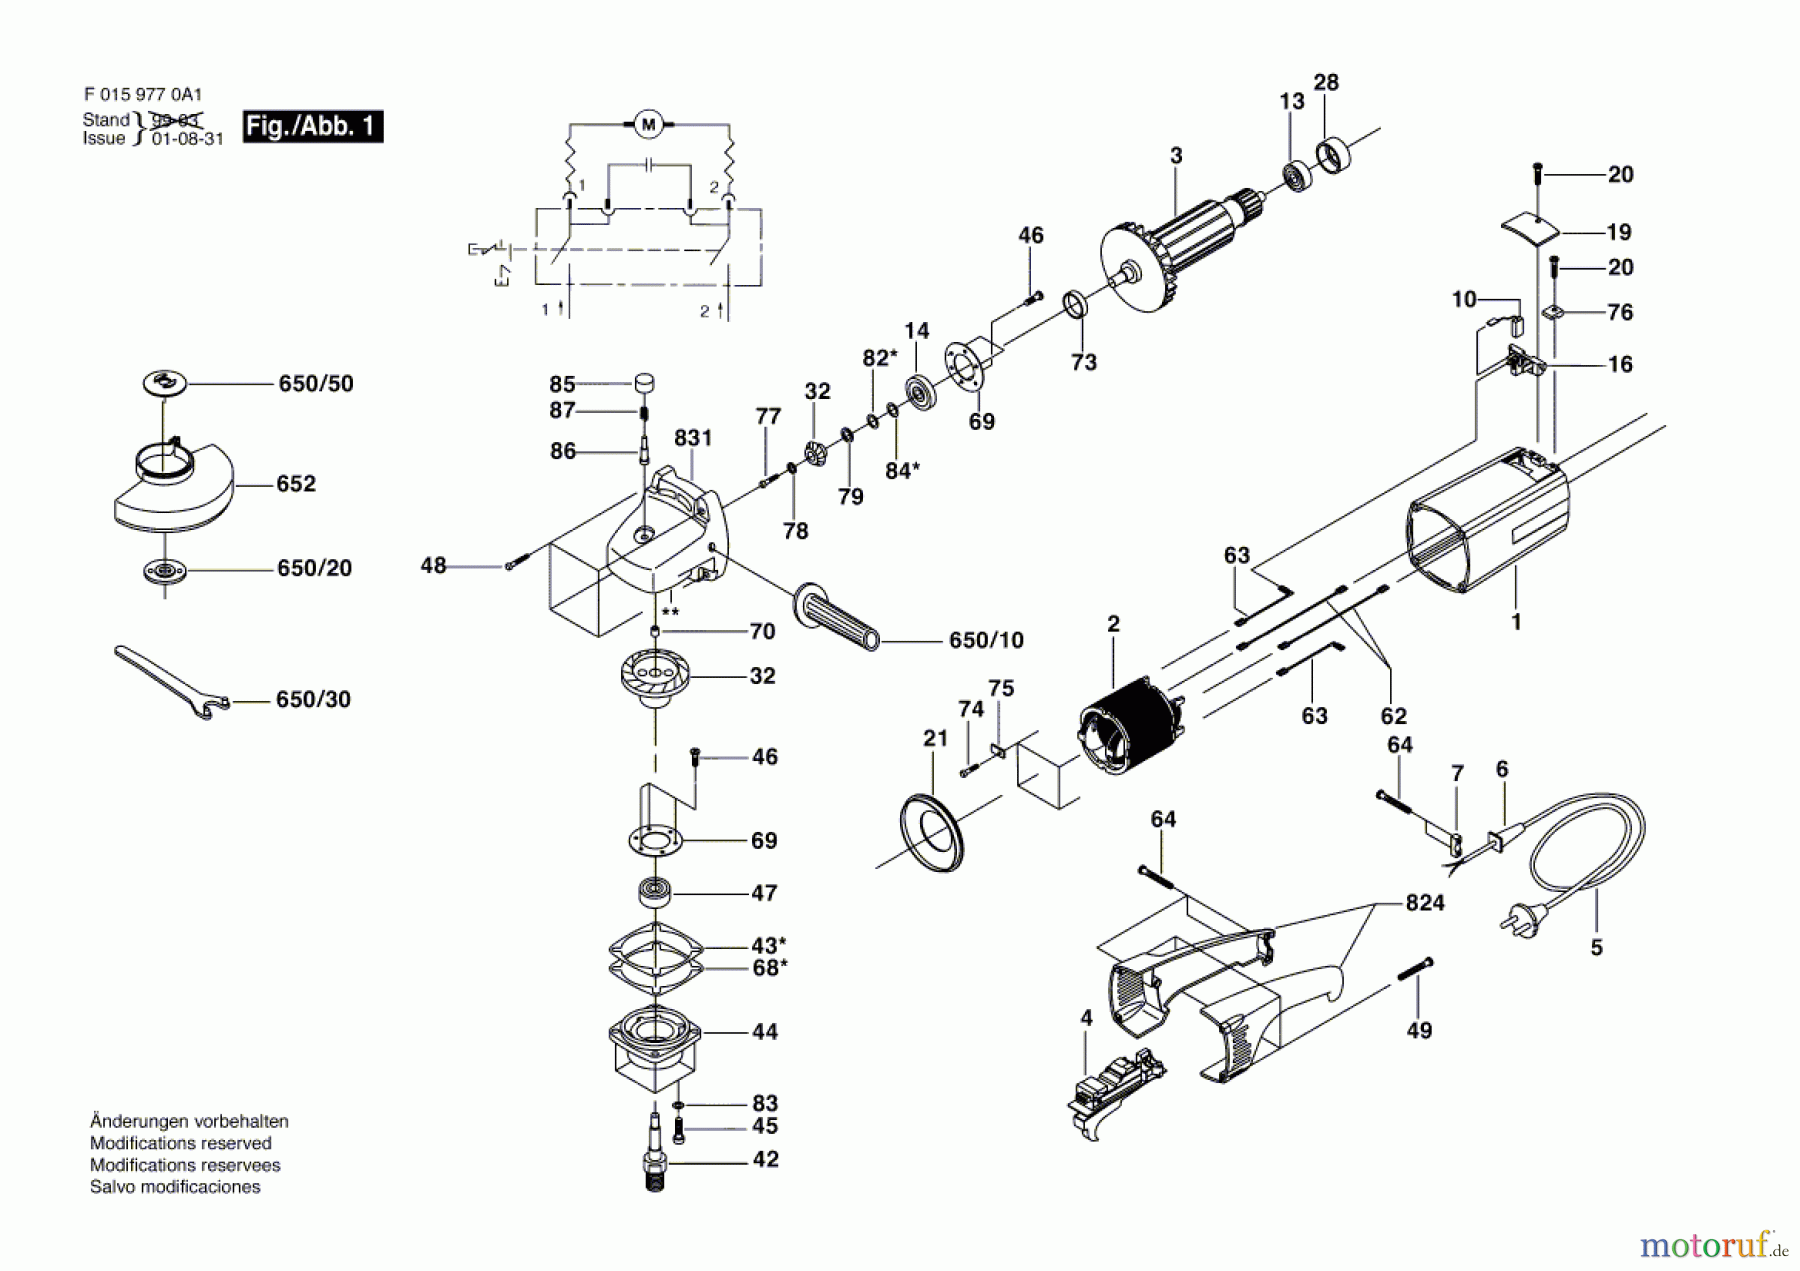  Bosch Werkzeug Winkelschleifer 9770 H1 Seite 1